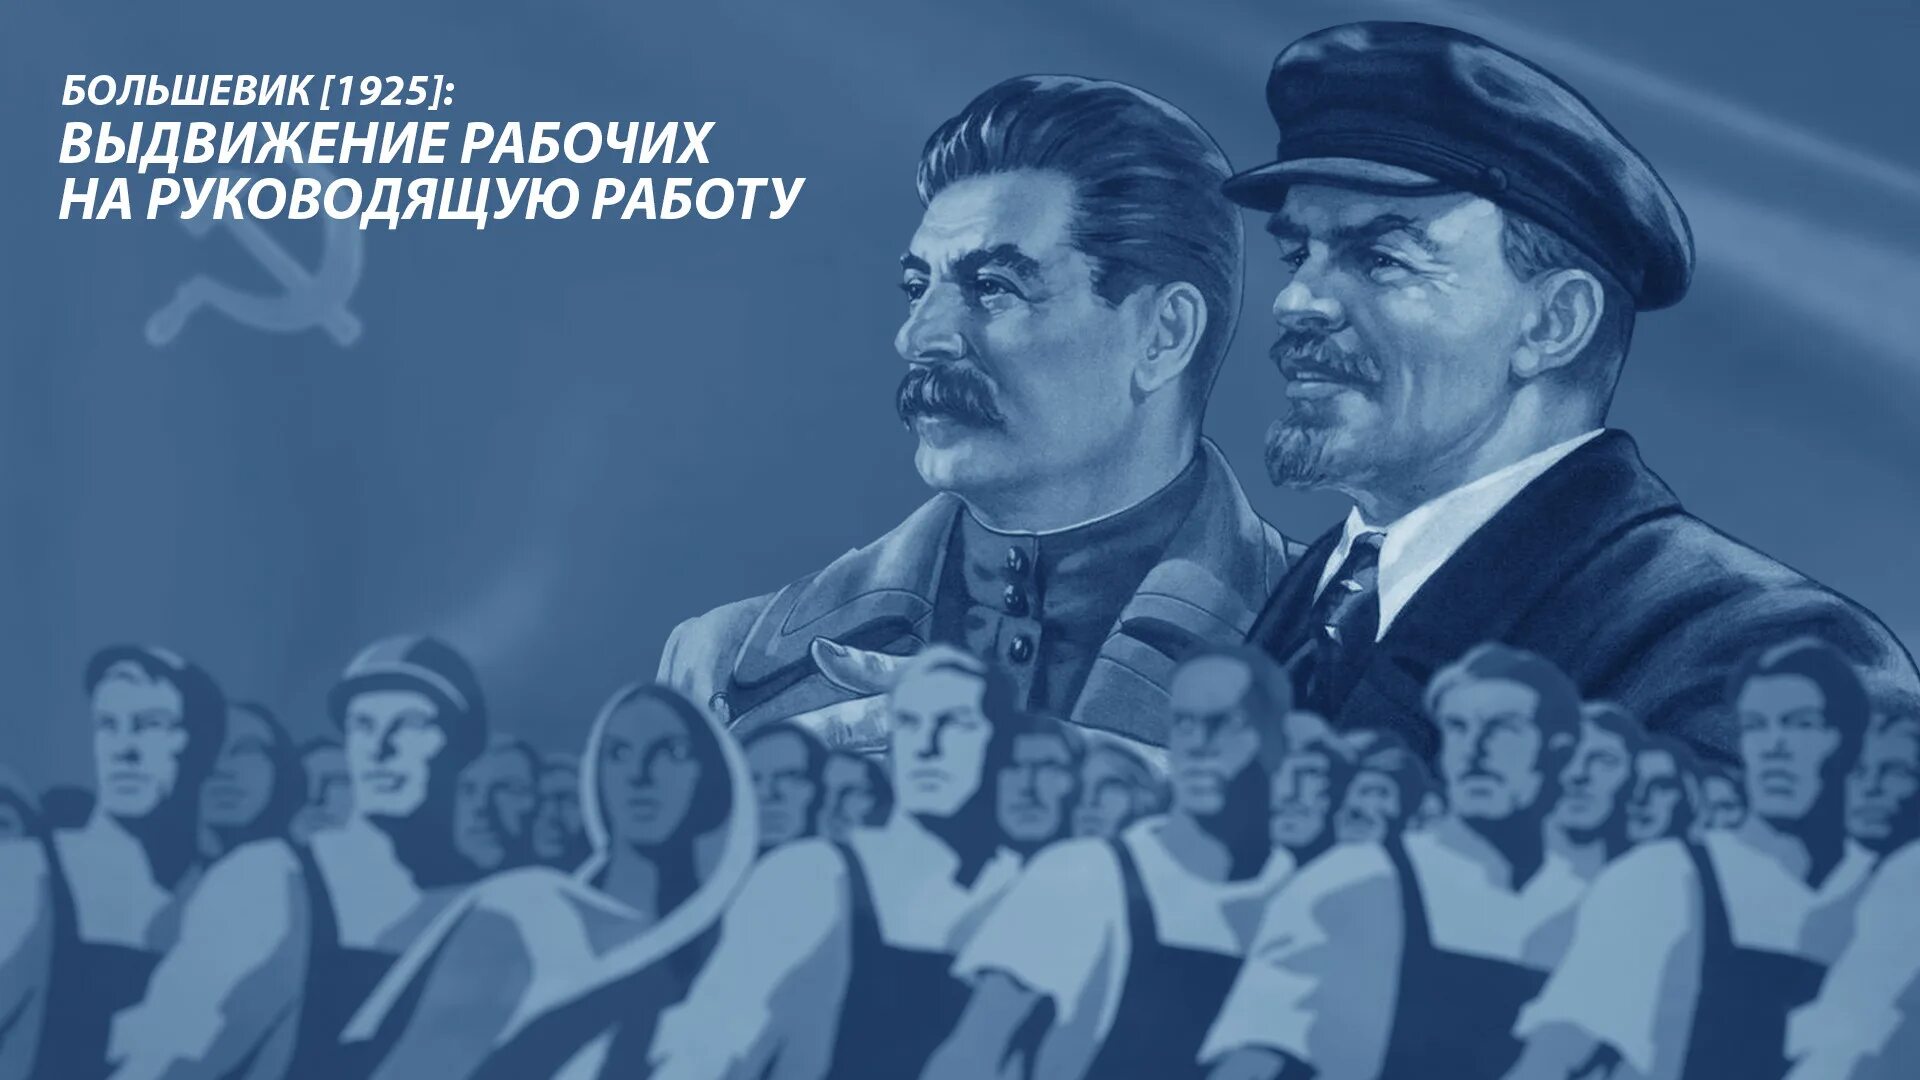 Большевик идет. Маркс Энгельс Ленин Сталин. Большевики 1925. Марксизм-ленинизм плакаты. Марксизм пролетариат.